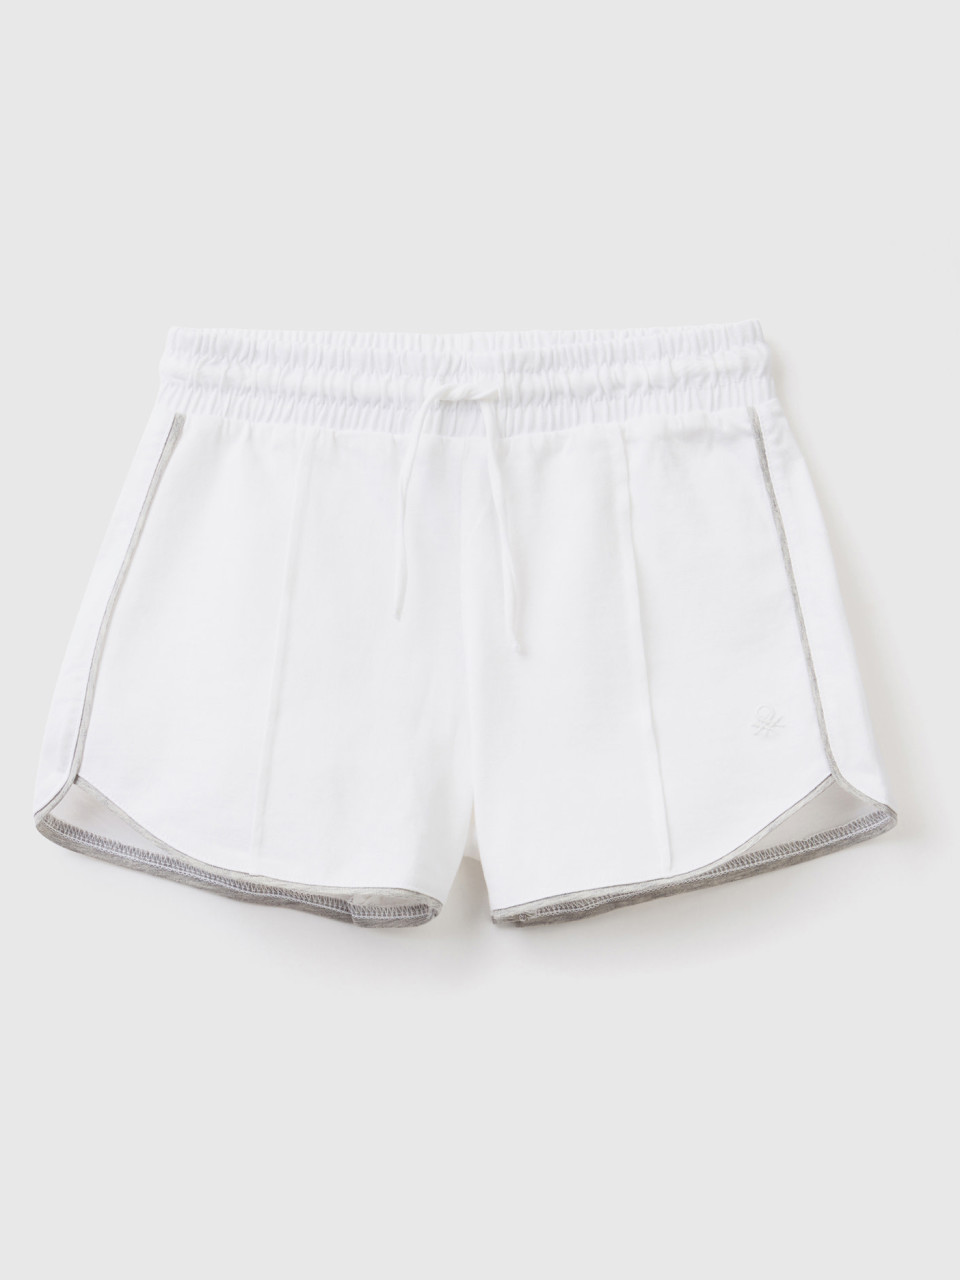 Benetton, 100% Cotton Shorts With Drawstring, White, Kids